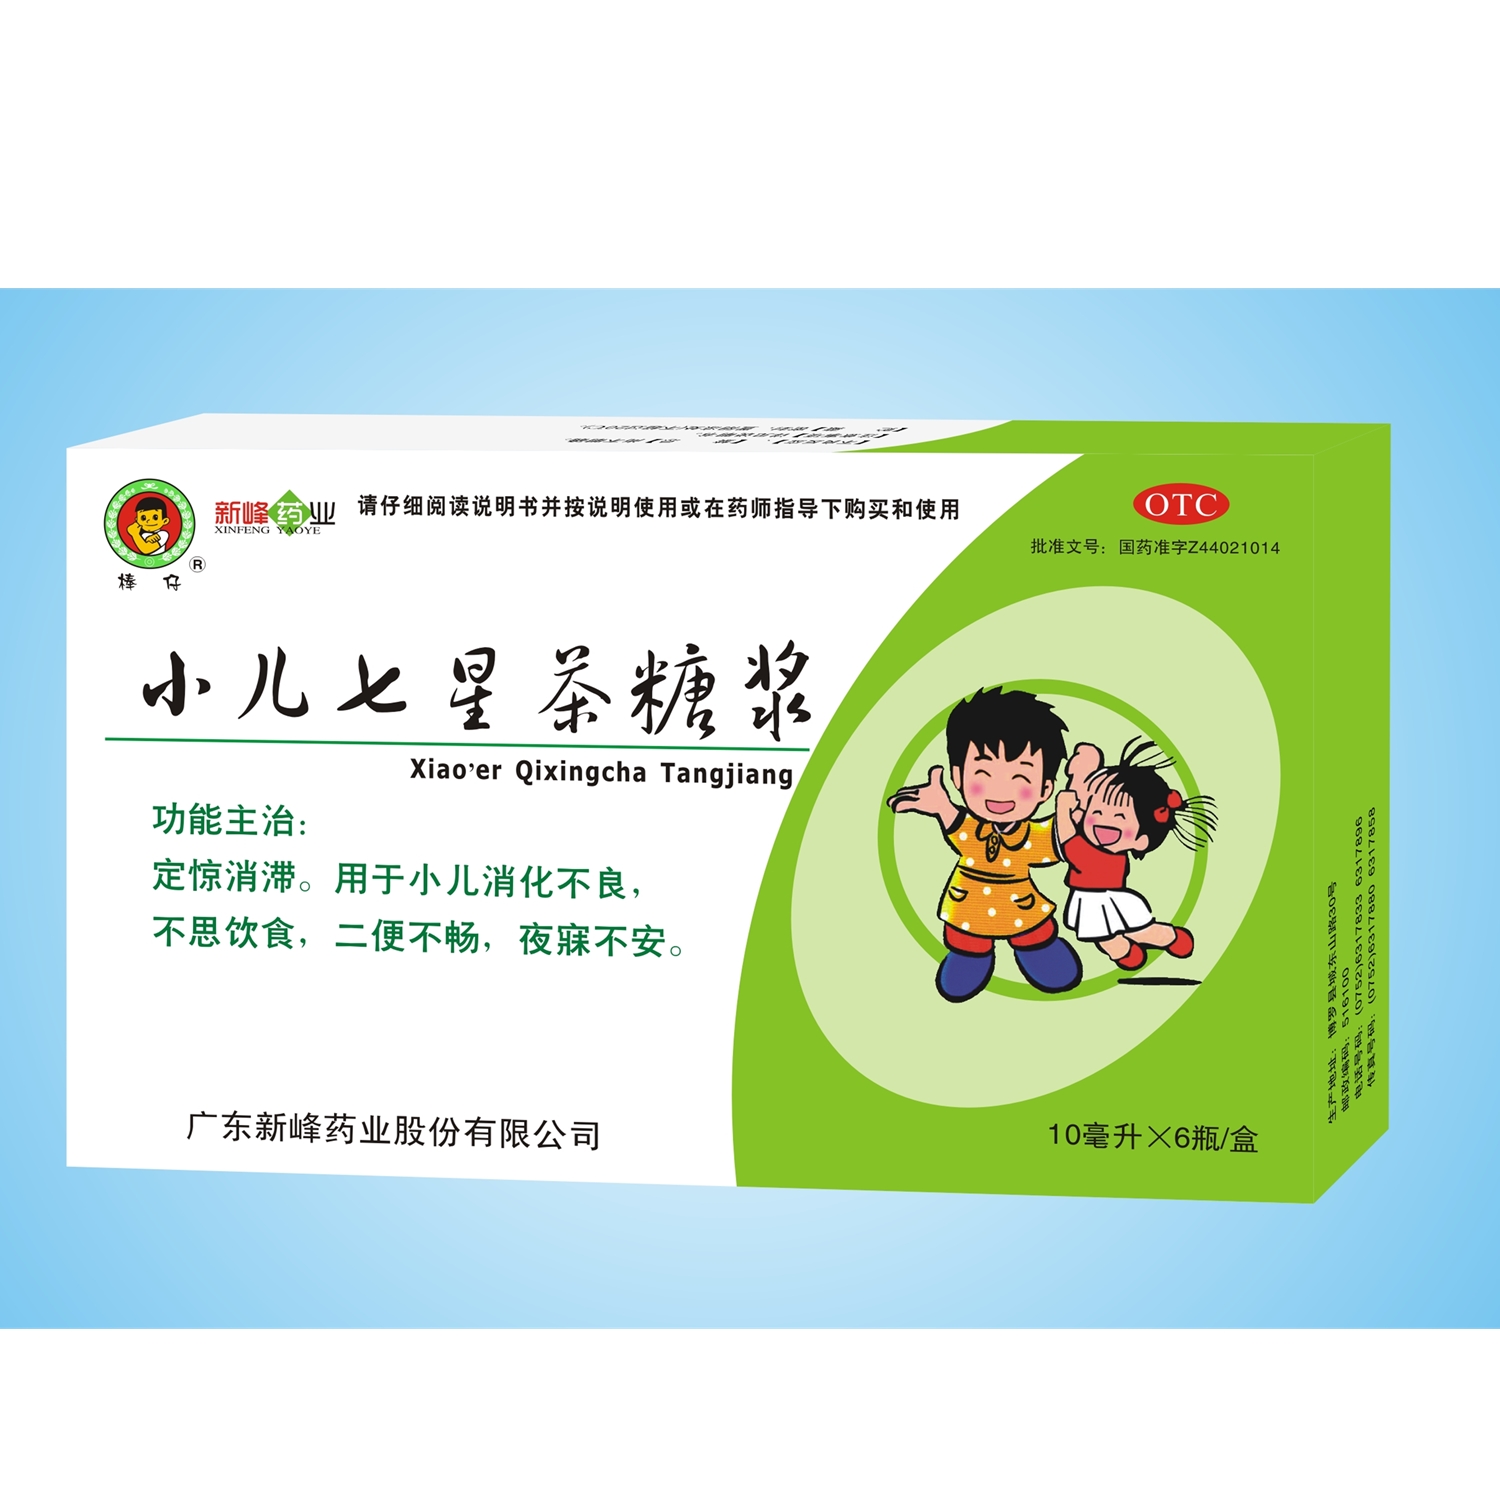 【新峰】小儿七星茶糖浆-广东新峰药业股份有限公司